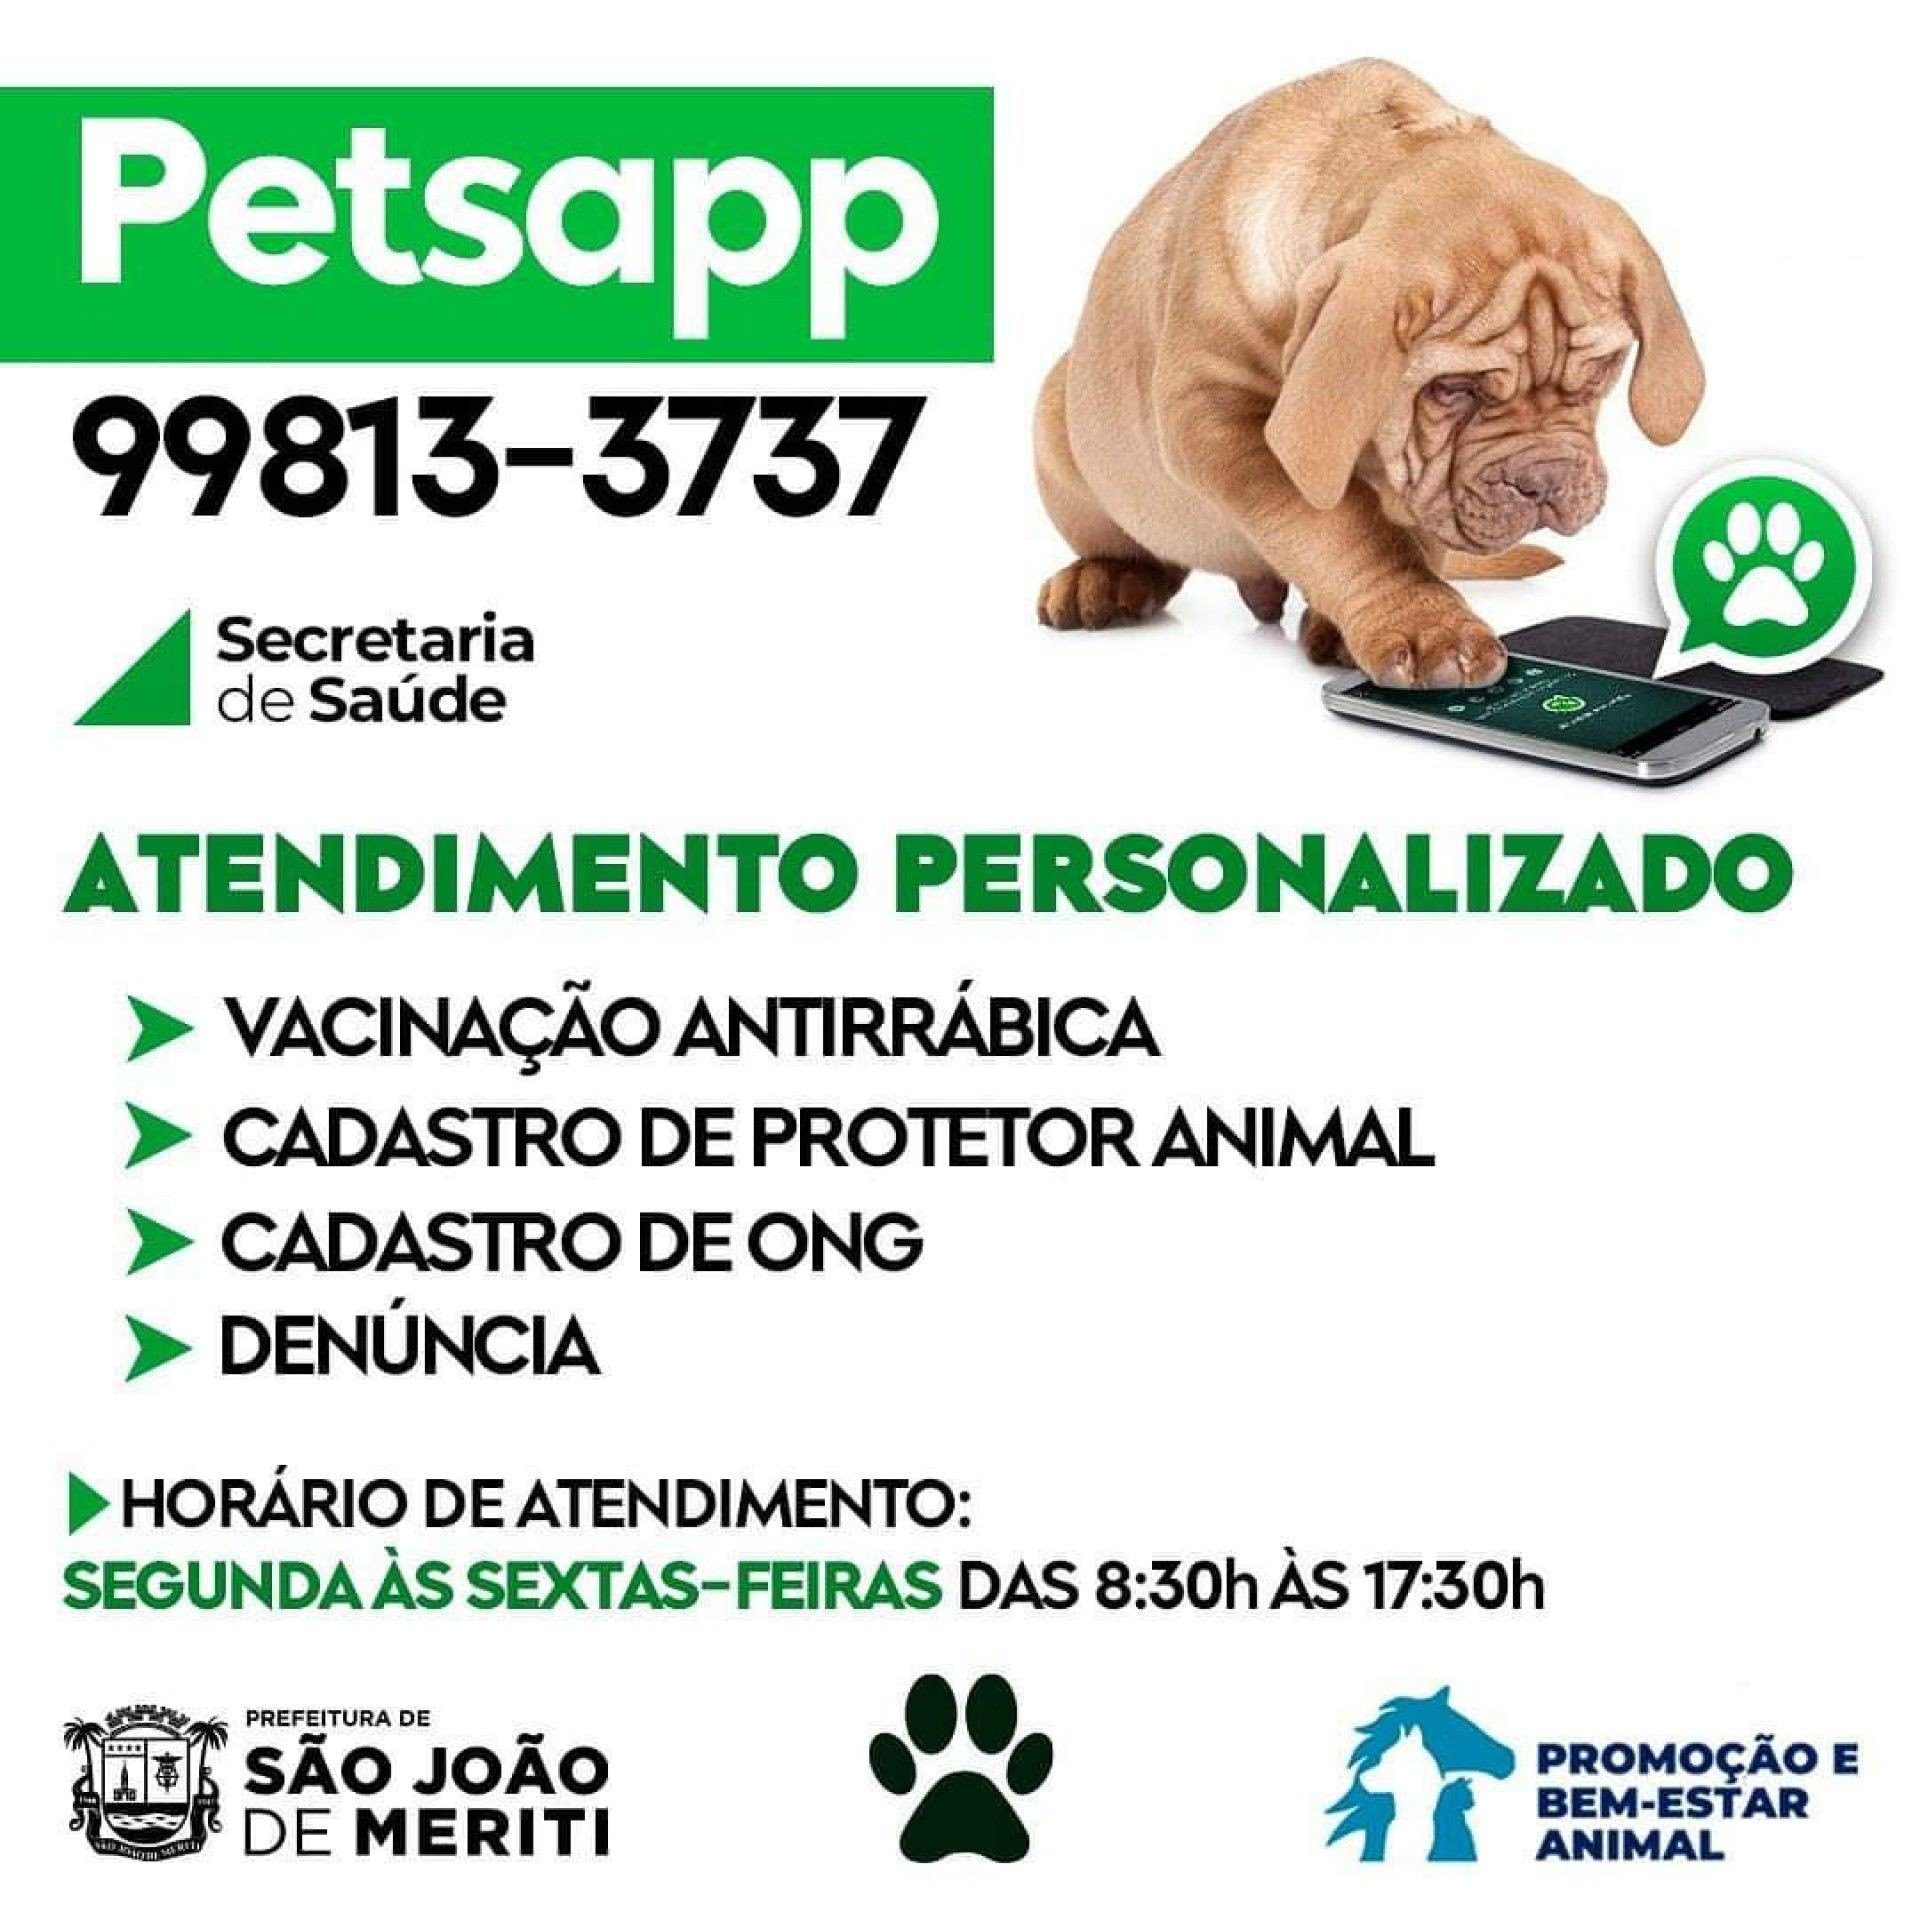 o PetsApp funciona através do telefone 99813-3737 na plataforma WhatsApp - Divulgação